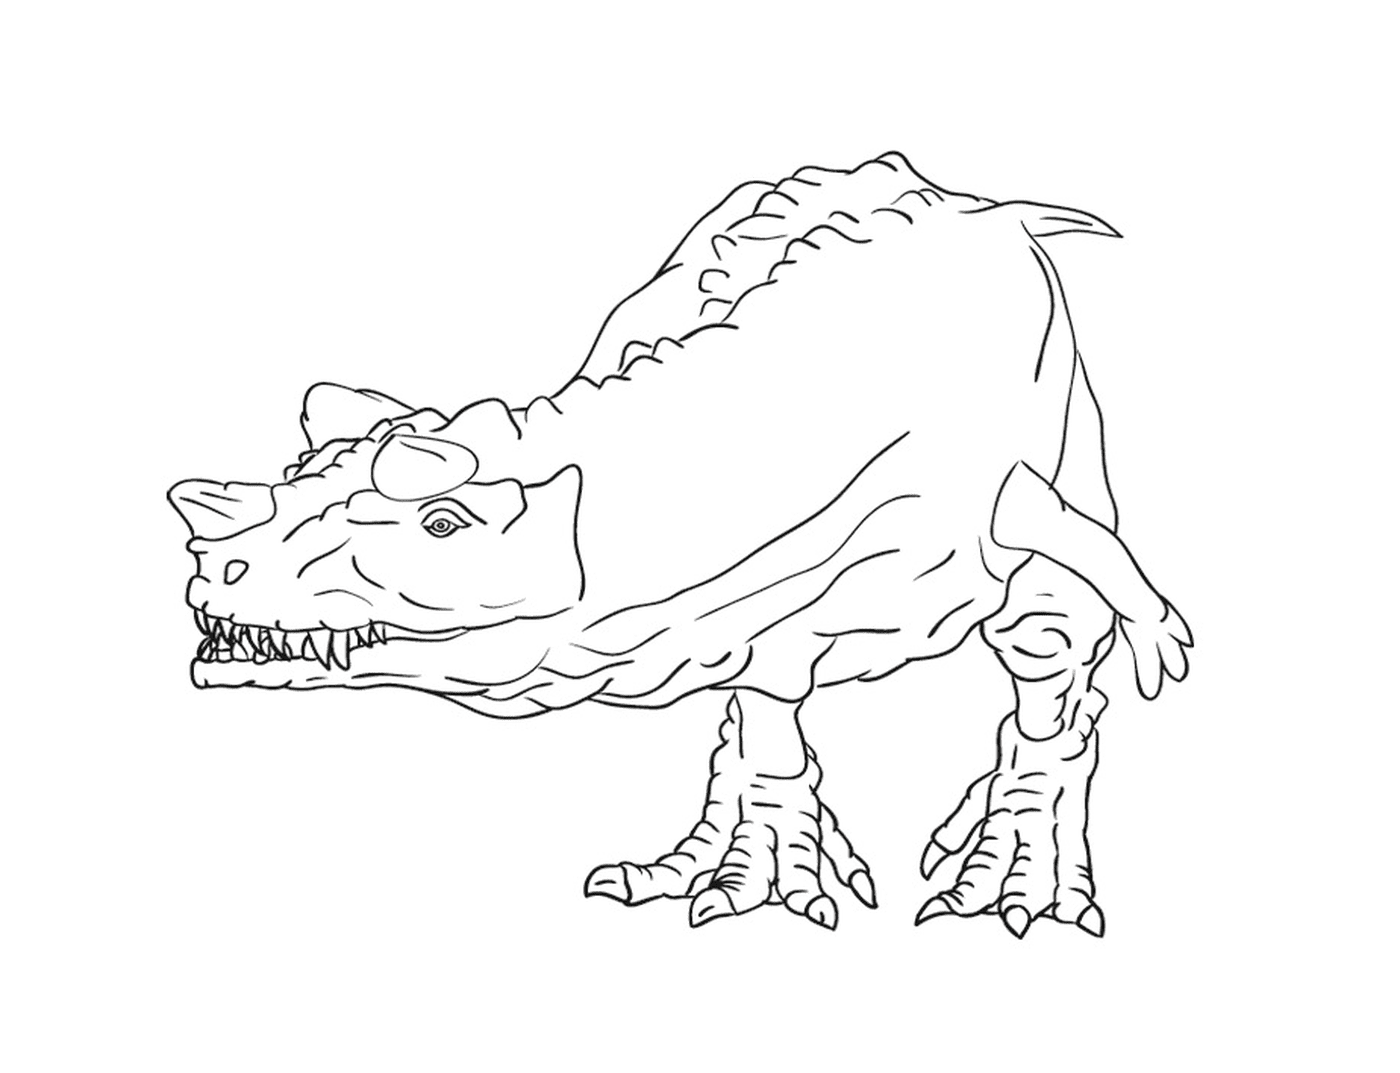  Zeichnung eines ordentlichen und detaillierten Dinosauriers 